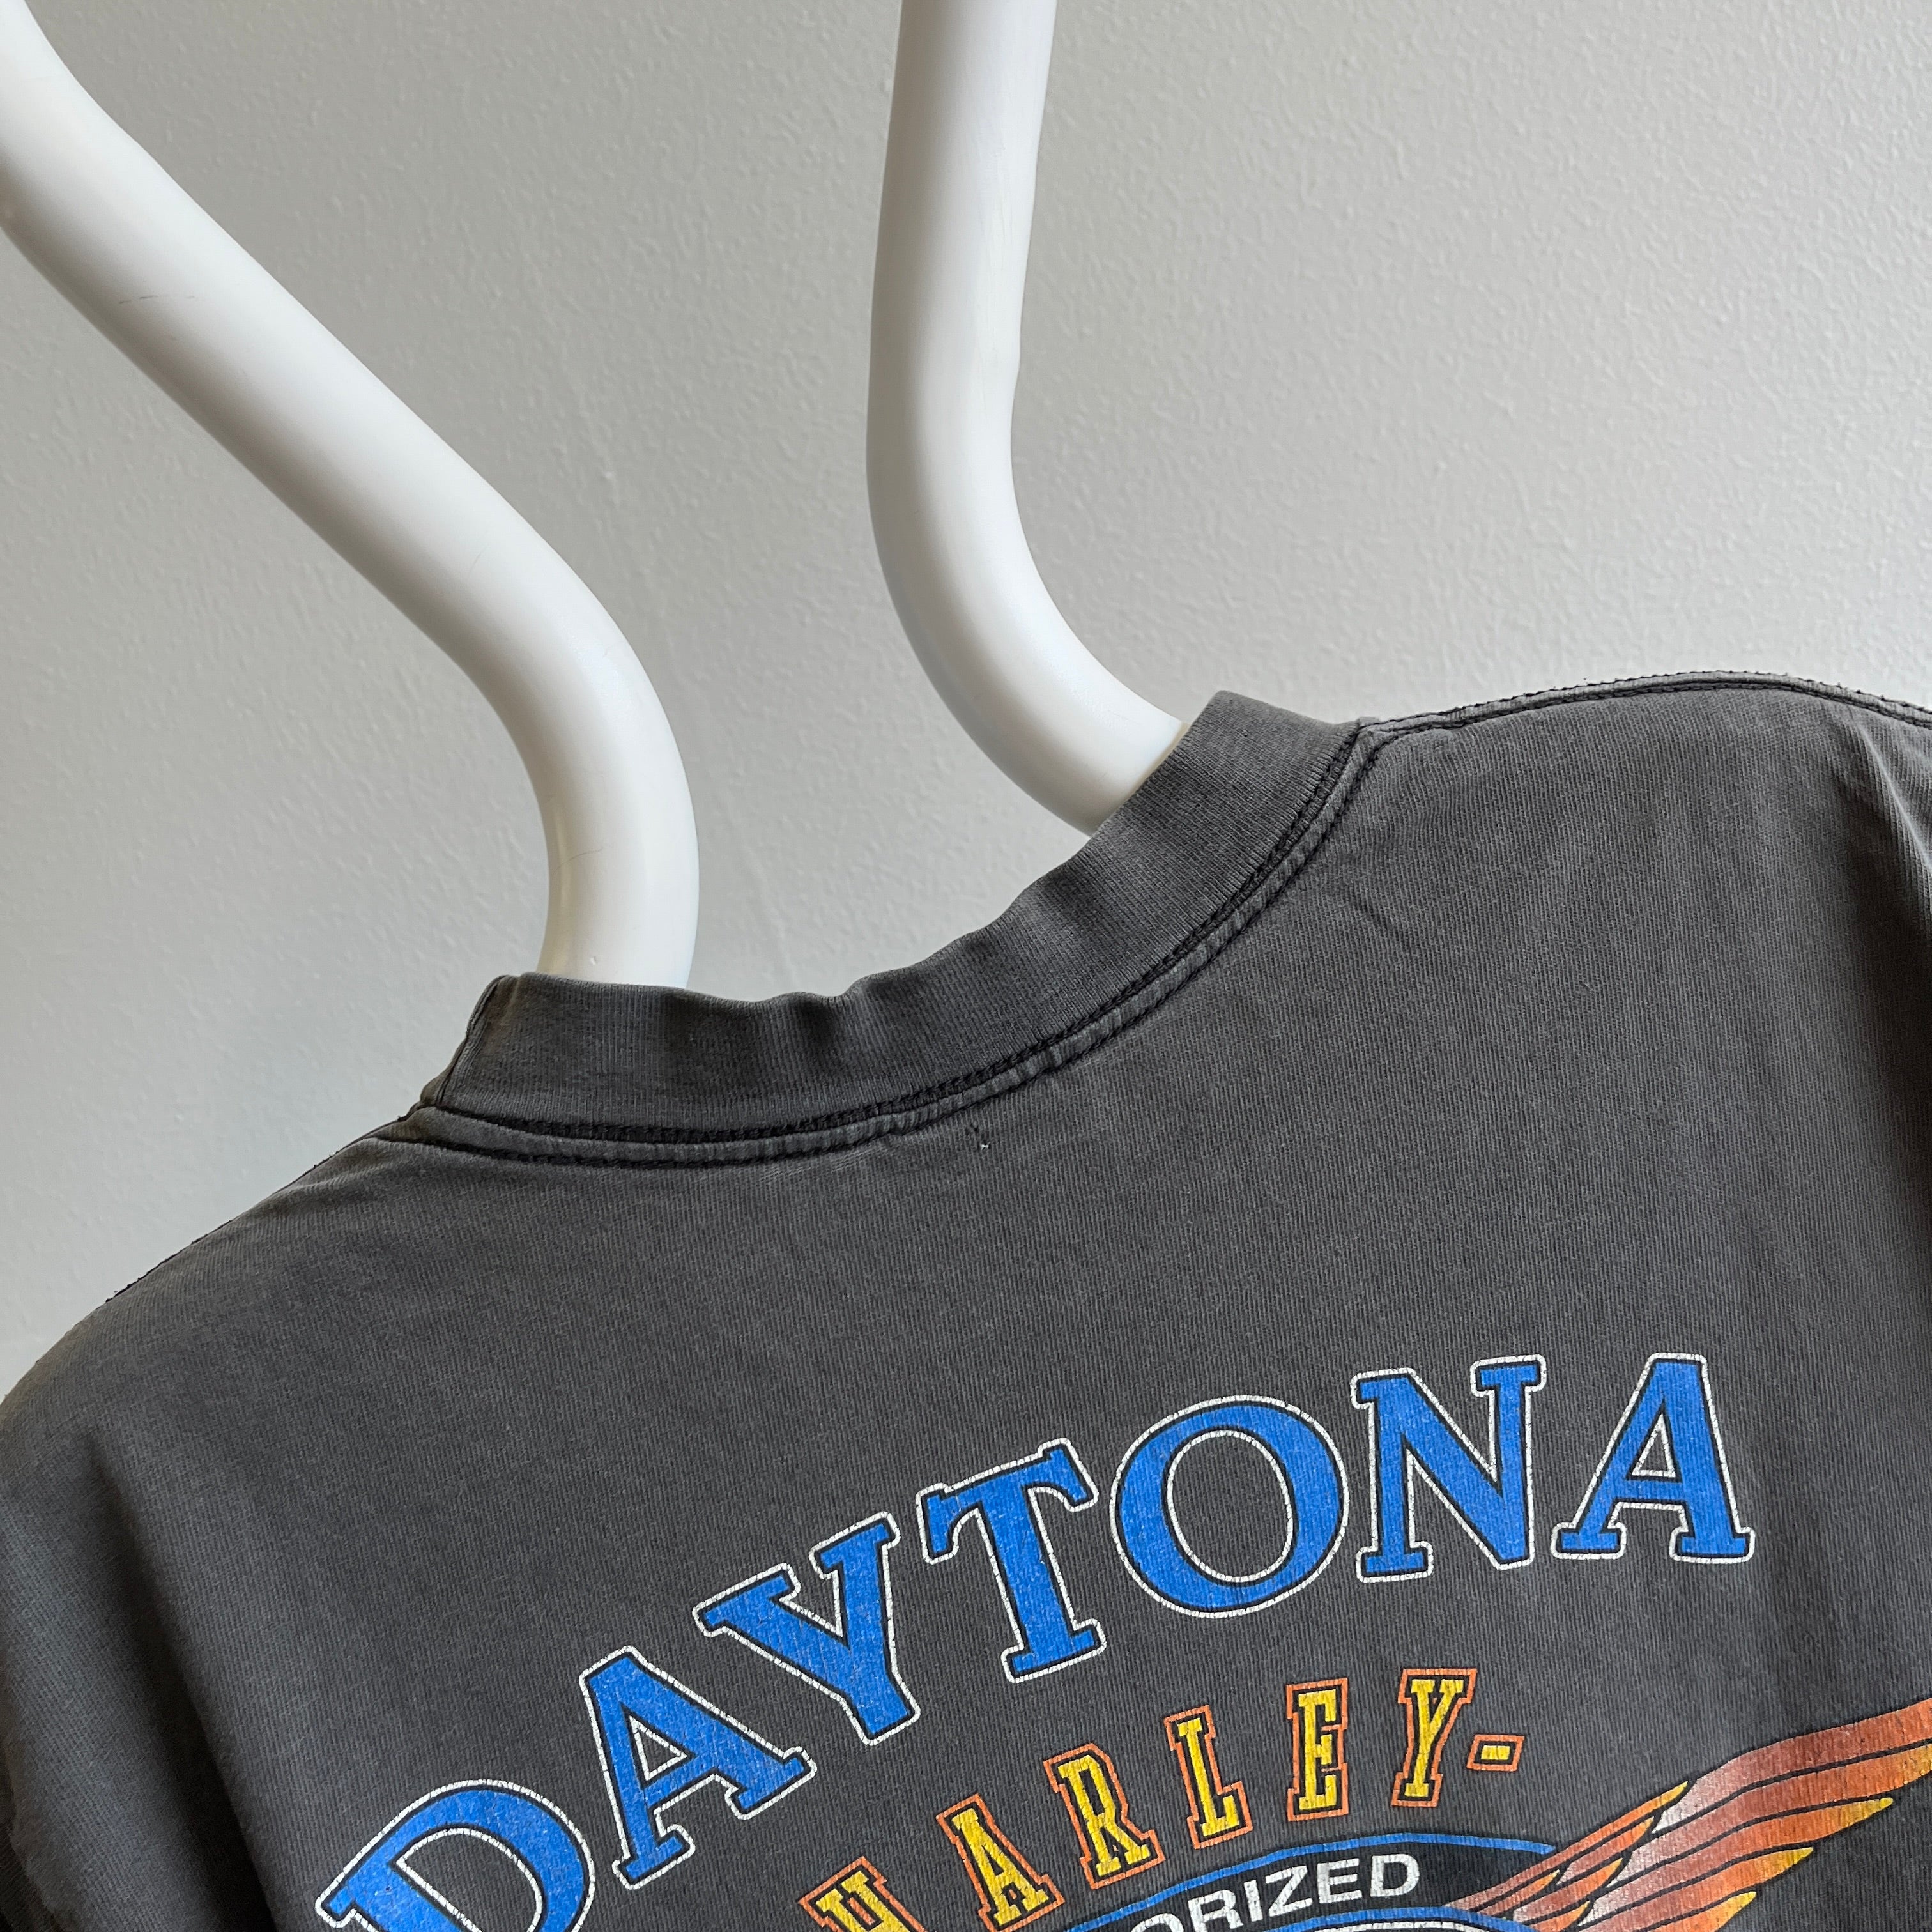 T-shirt Harley Daytona Bike Week 2000 parfaitement usé